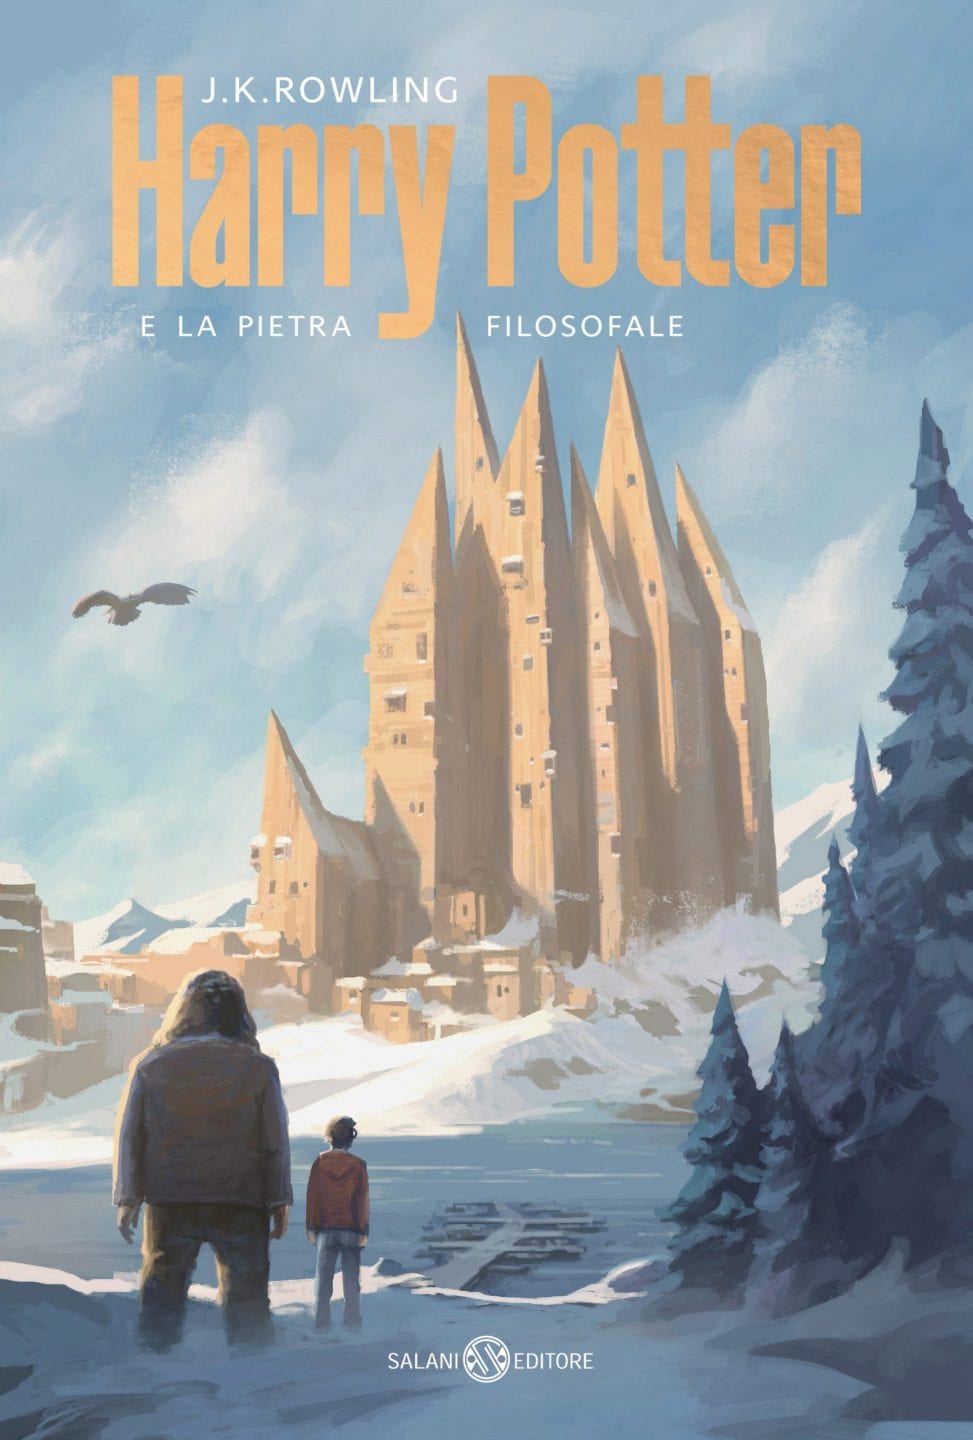 Новий дизайн обкладинок італійського видання «Гаррі Поттера»